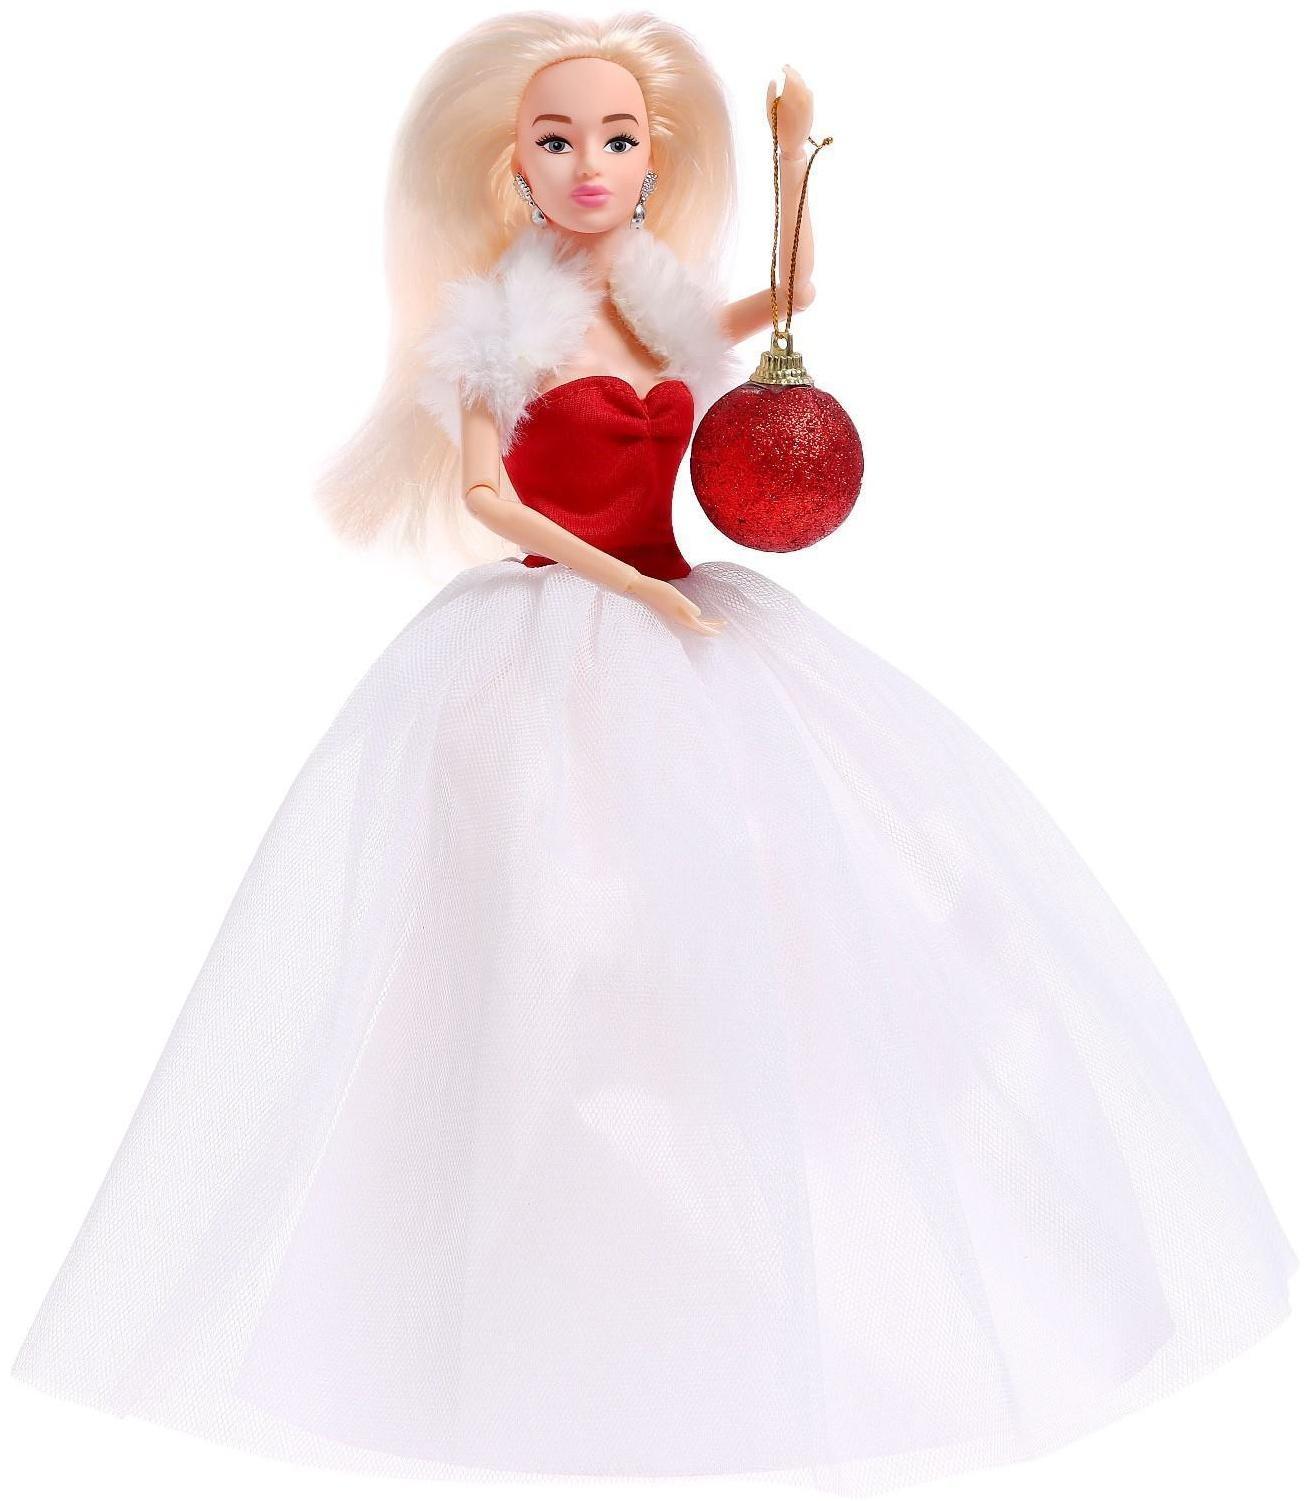 Кукла-модель шарнирная «Снежная принцесса Ксения», с аксессуаром, красно-белое платье